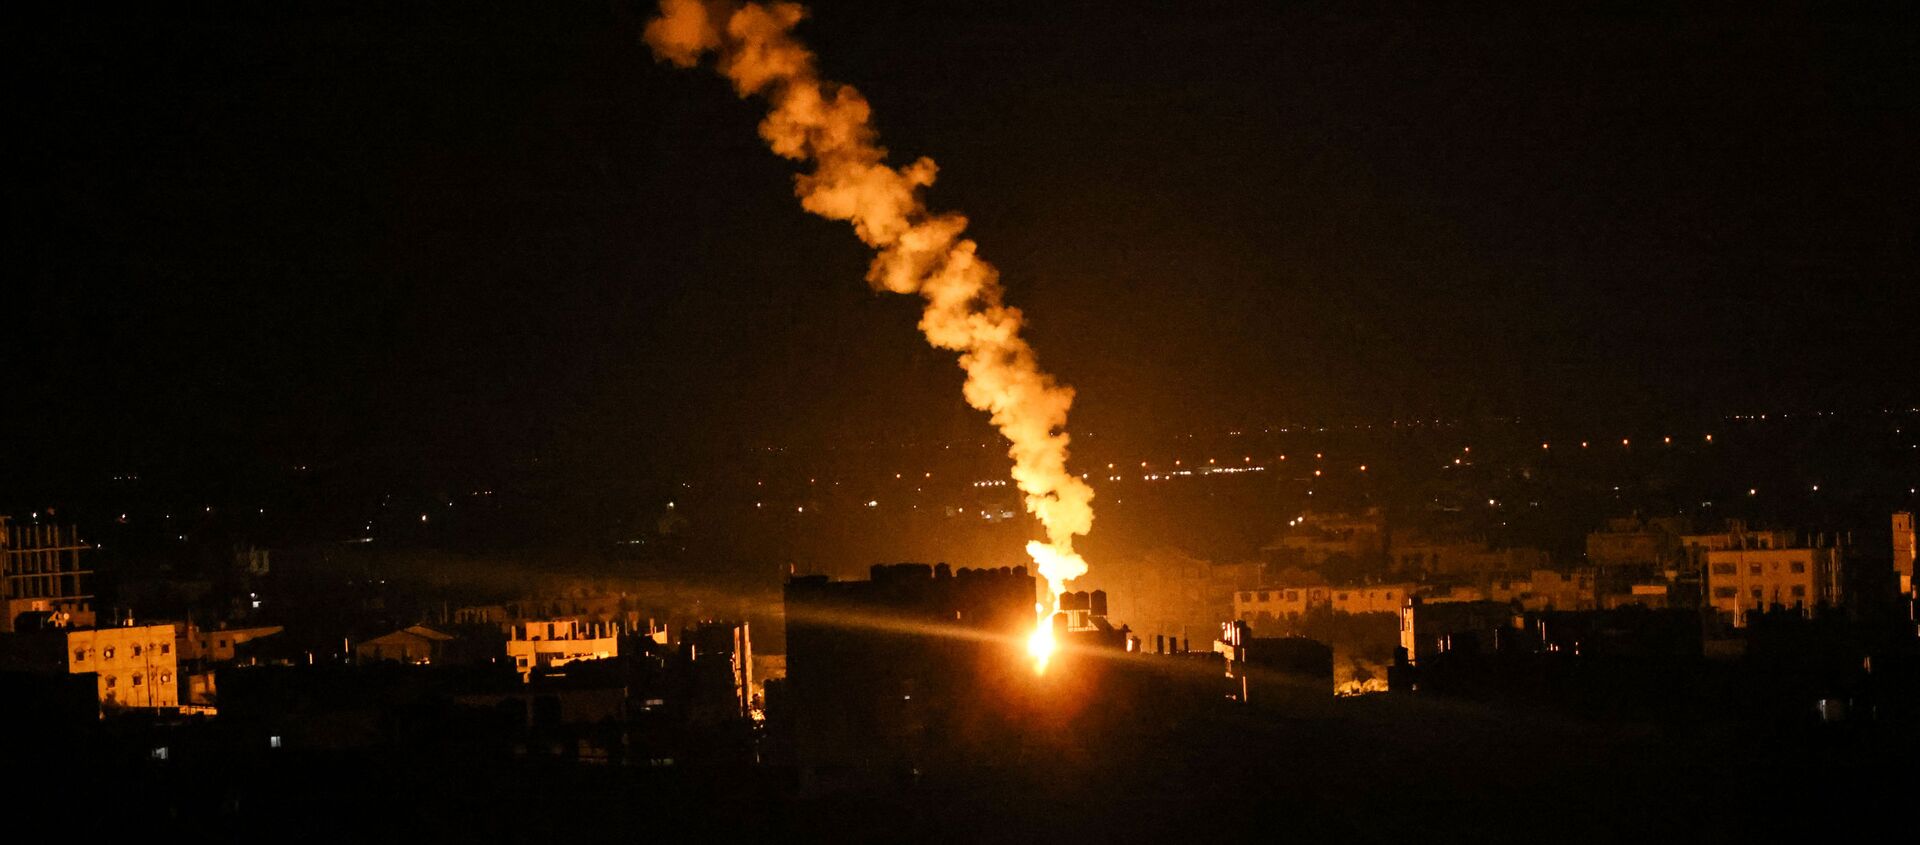 Сигнальные ракеты израильских сил освещают небо в Рафахе на юге сектора Газа - Sputnik Беларусь, 1920, 16.05.2021